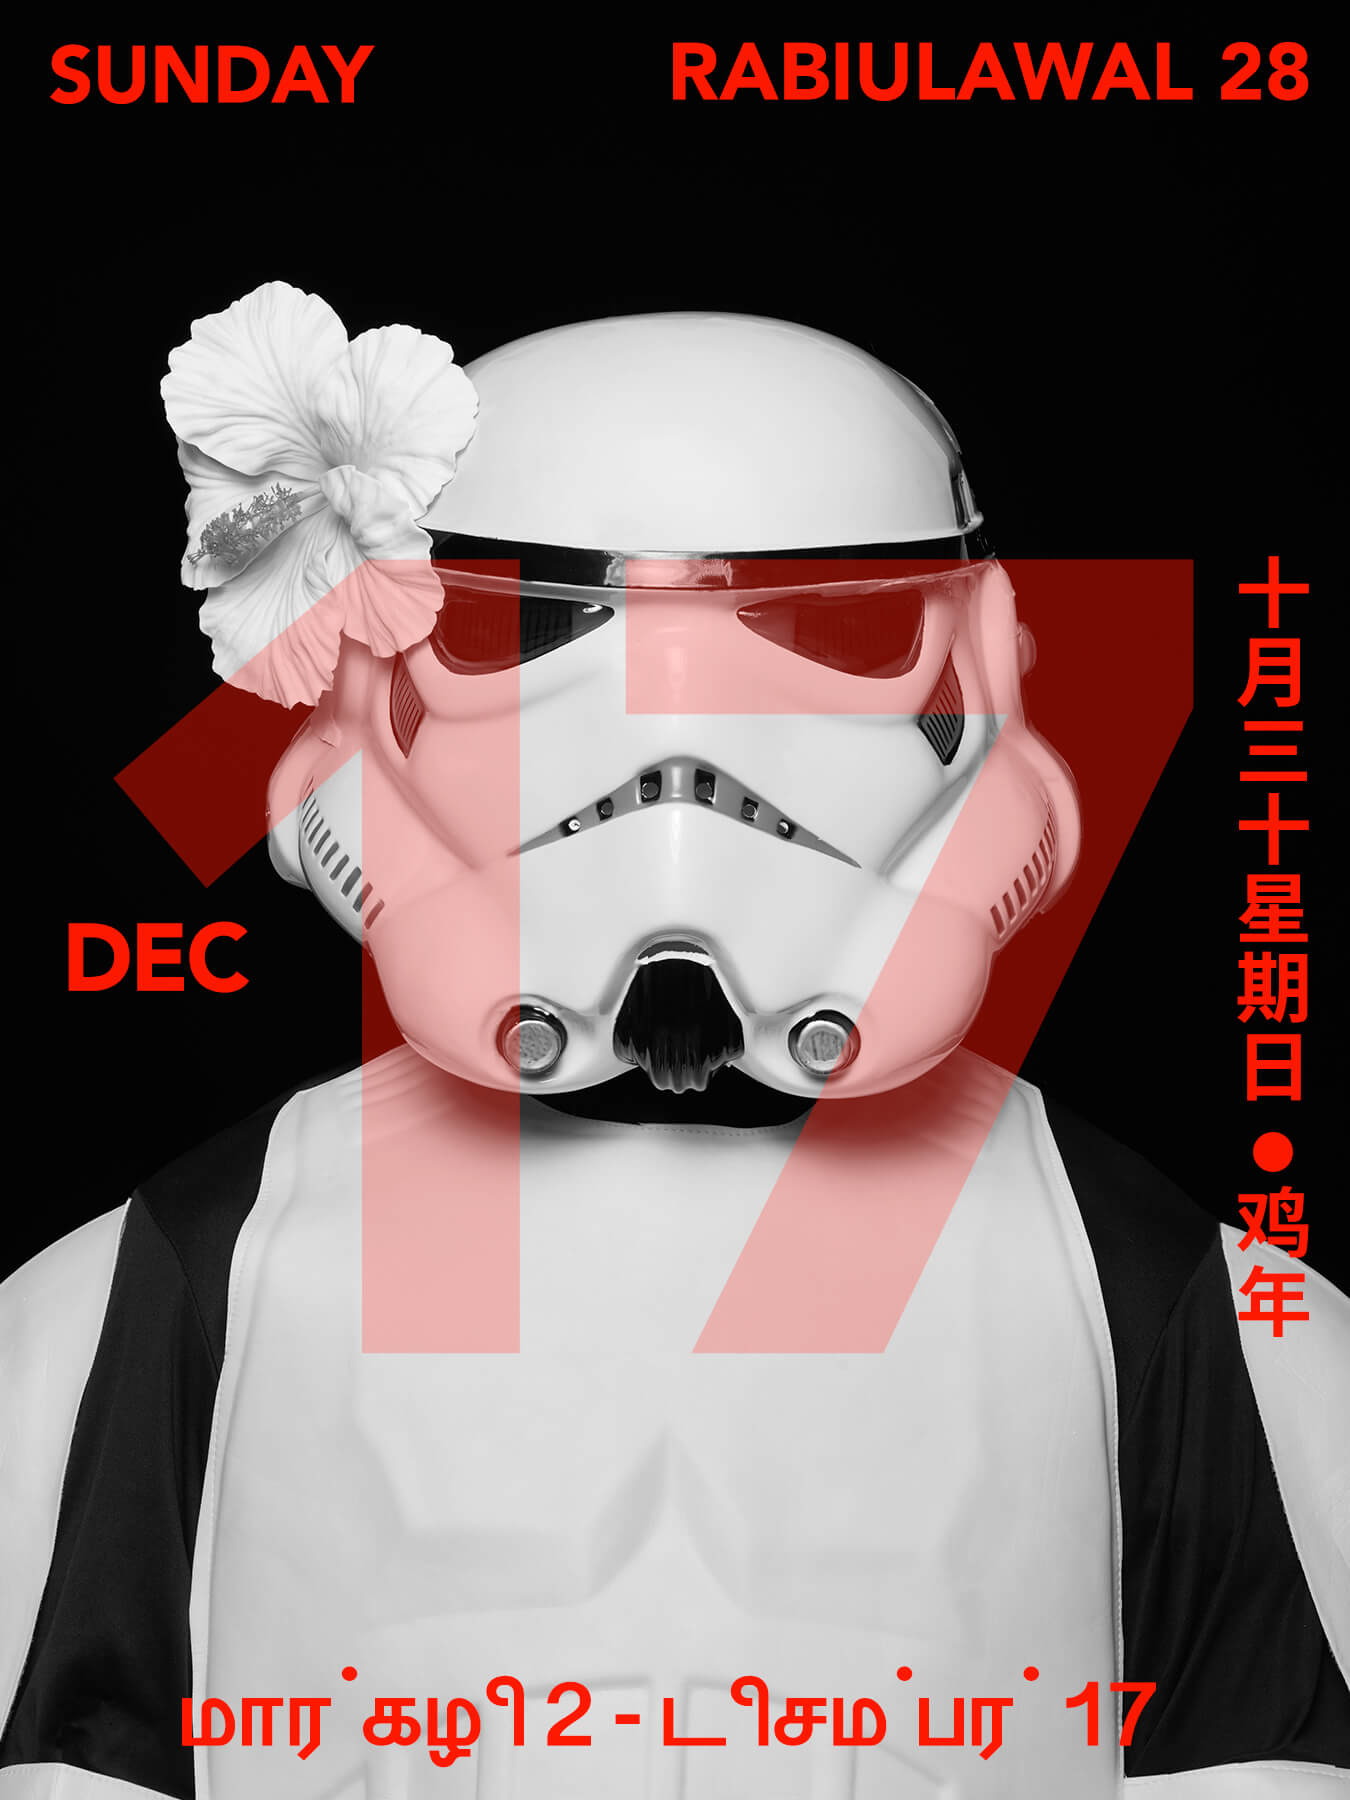 17 Dec 2017 Derong is a Storm Trooper!